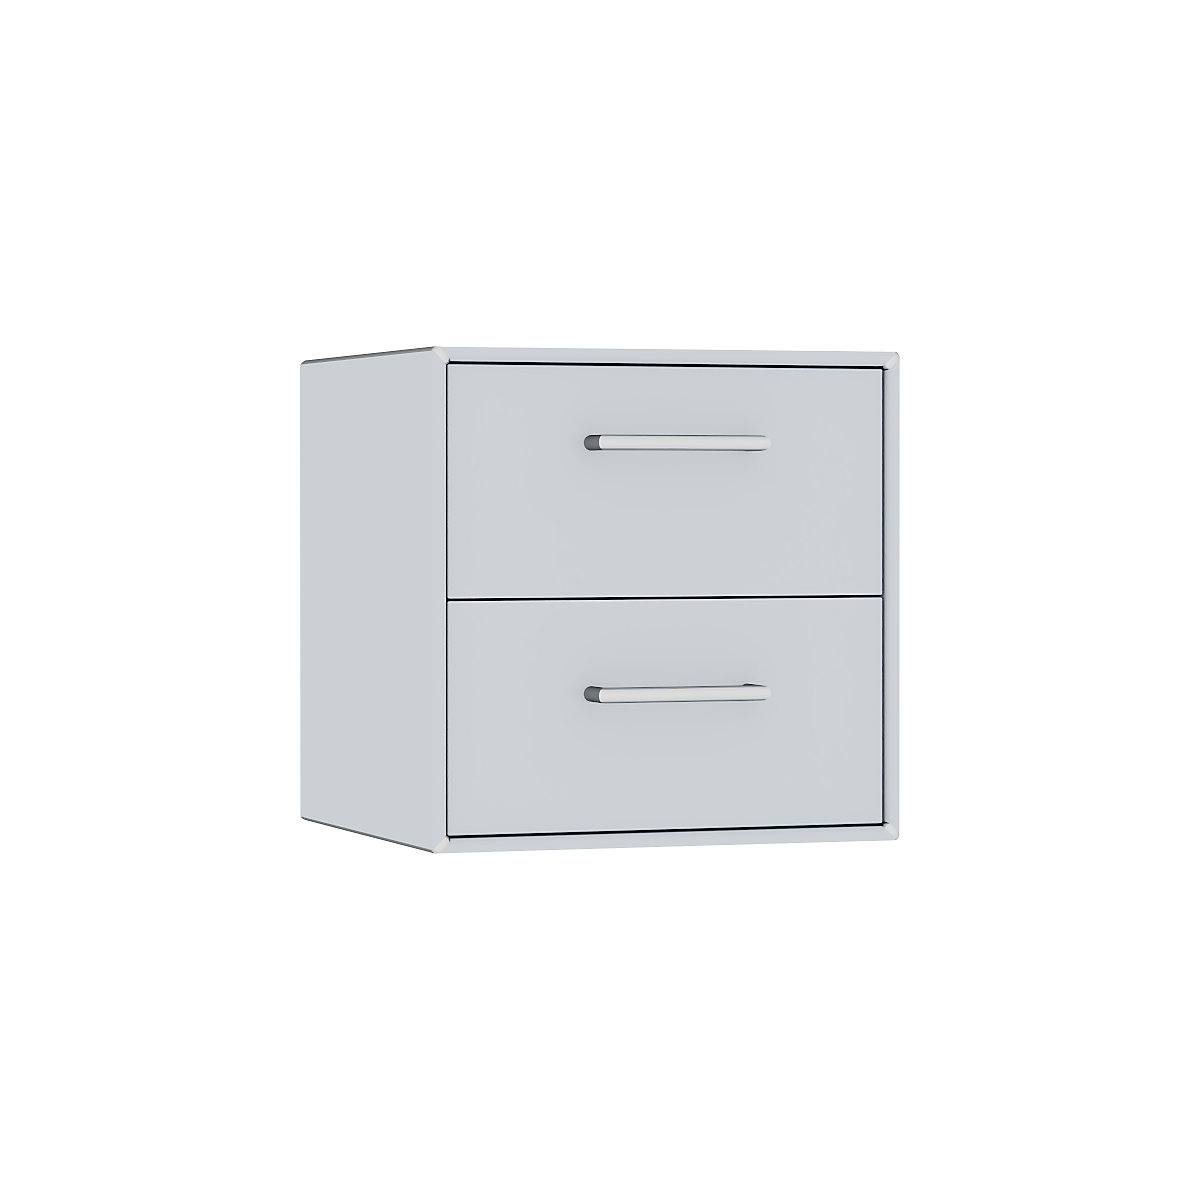 mauser – Cuie individuală, suspendată, 2 sertare, lățime 385 mm, alb aluminiu